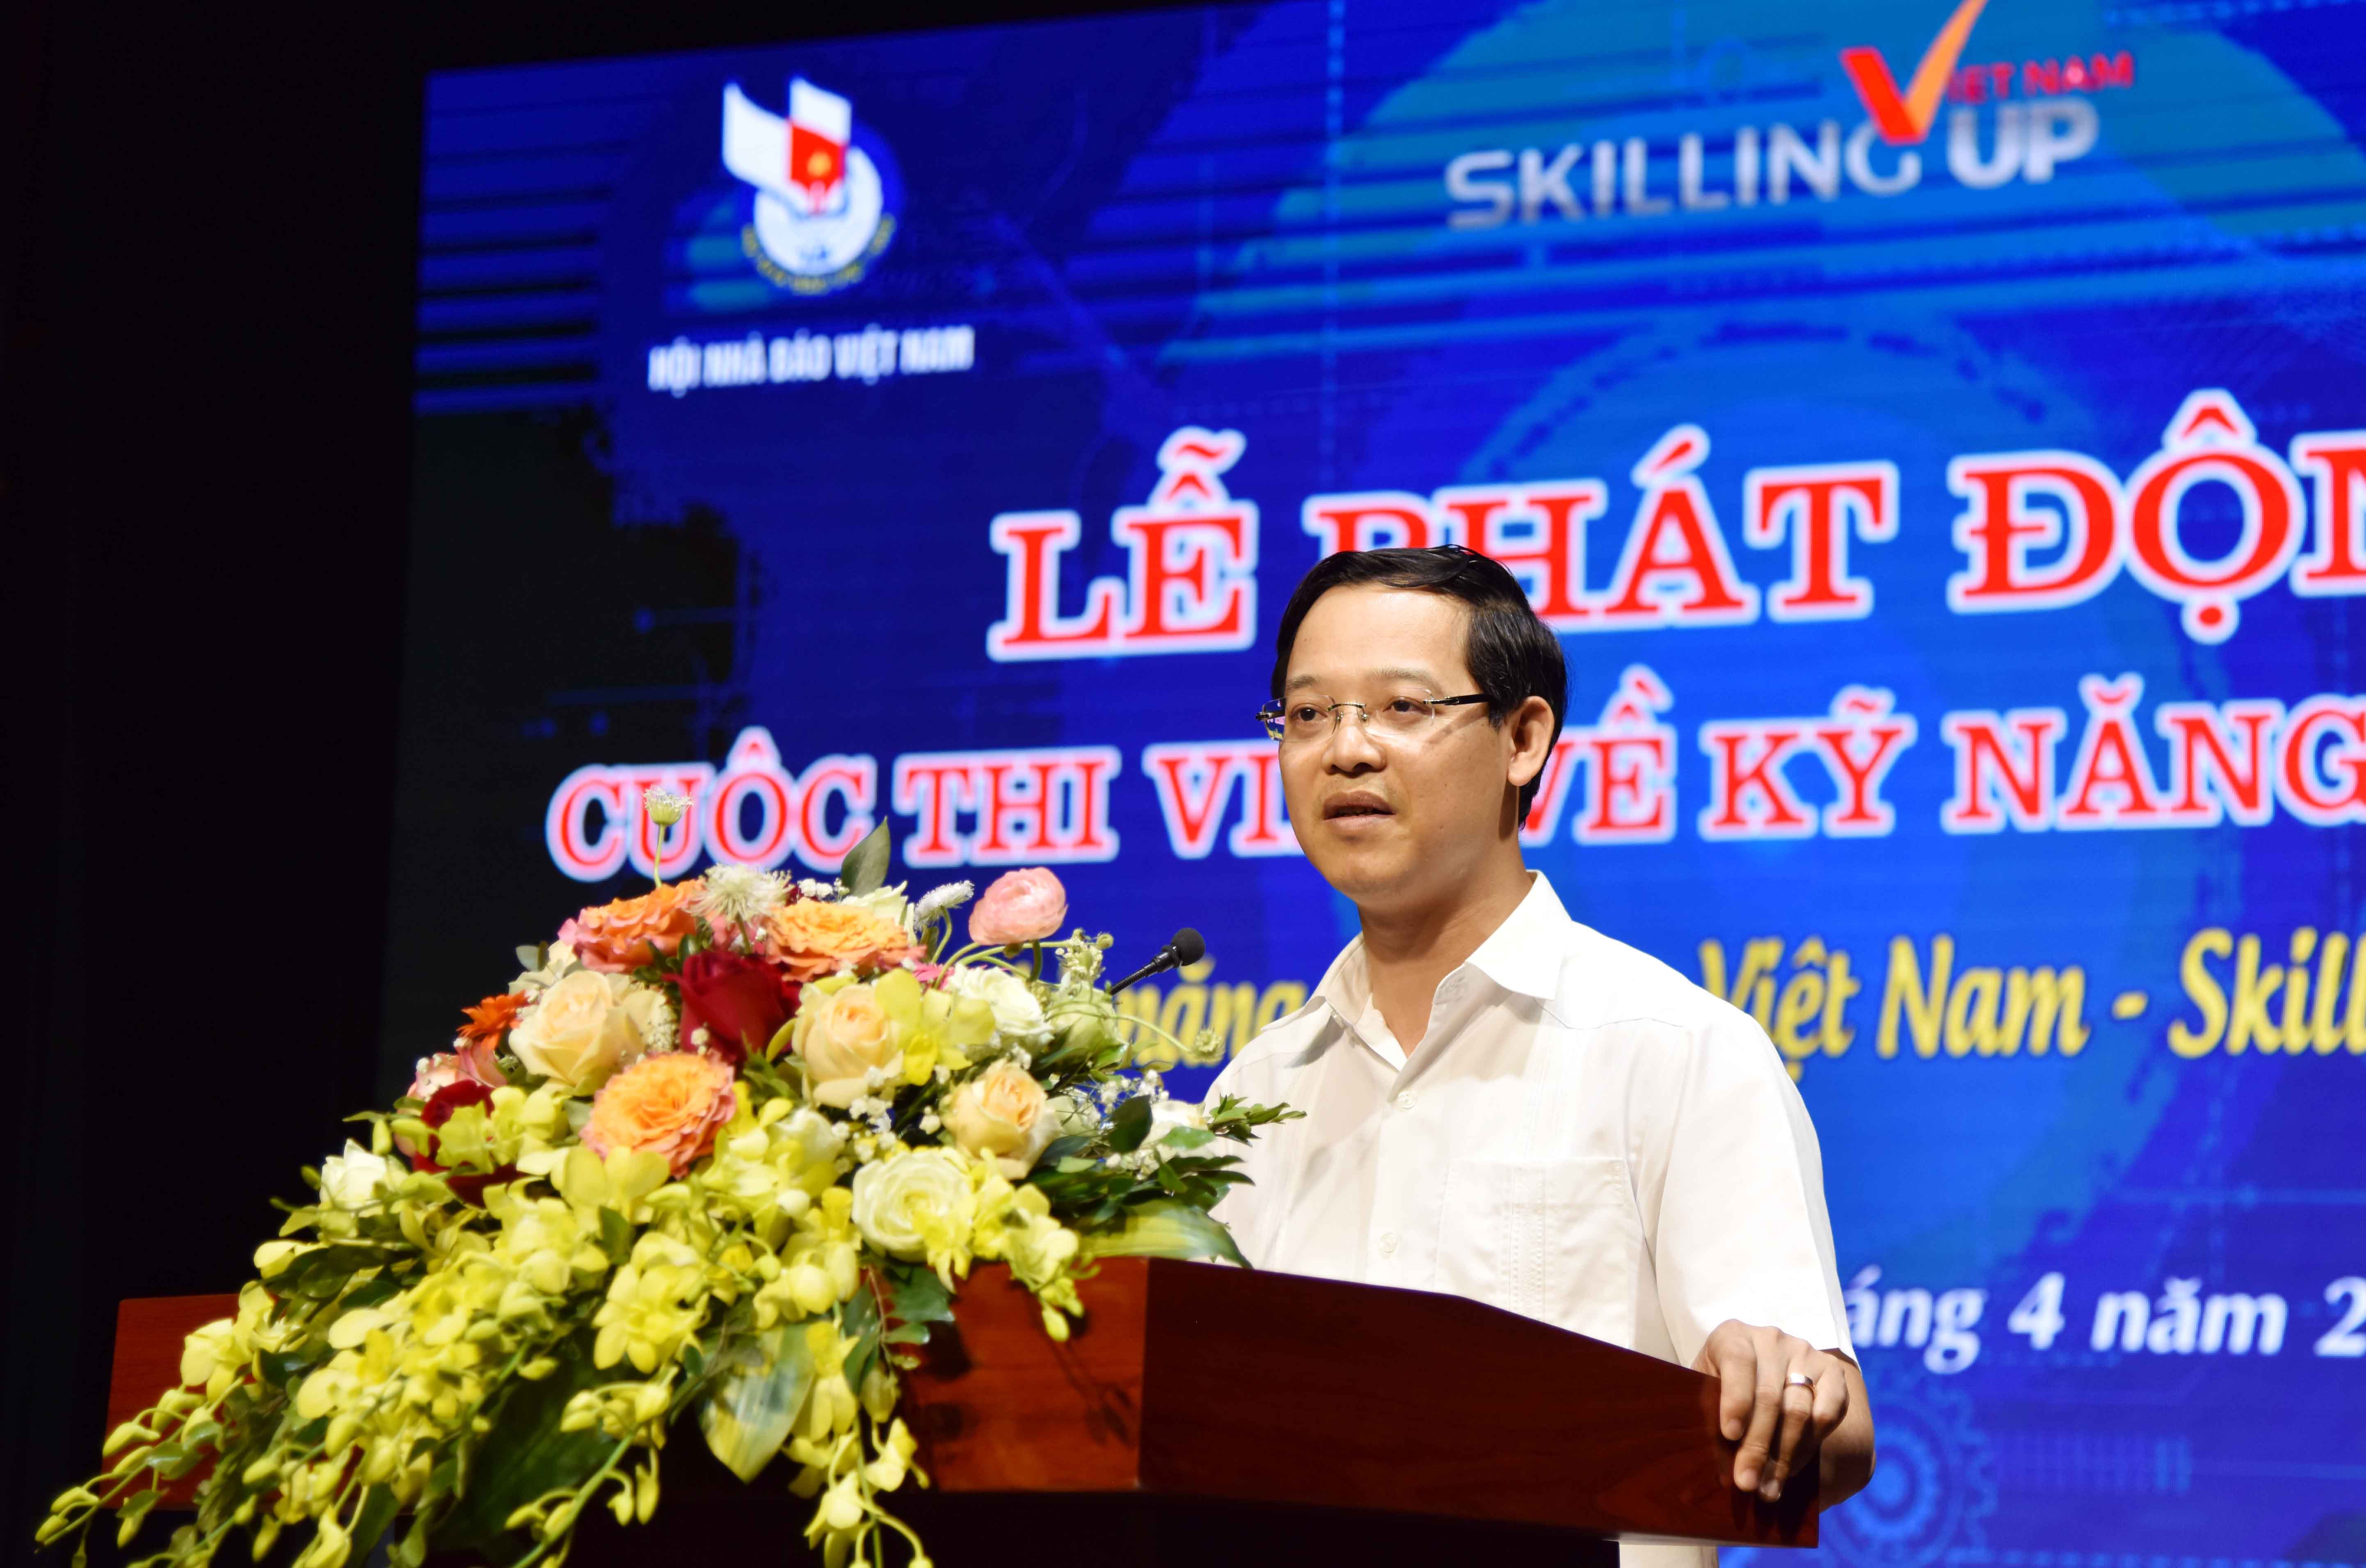 Phát động cuộc thi viết “nâng tầm kỹ năng lao động Việt Nam - Skilling up Việt nam”